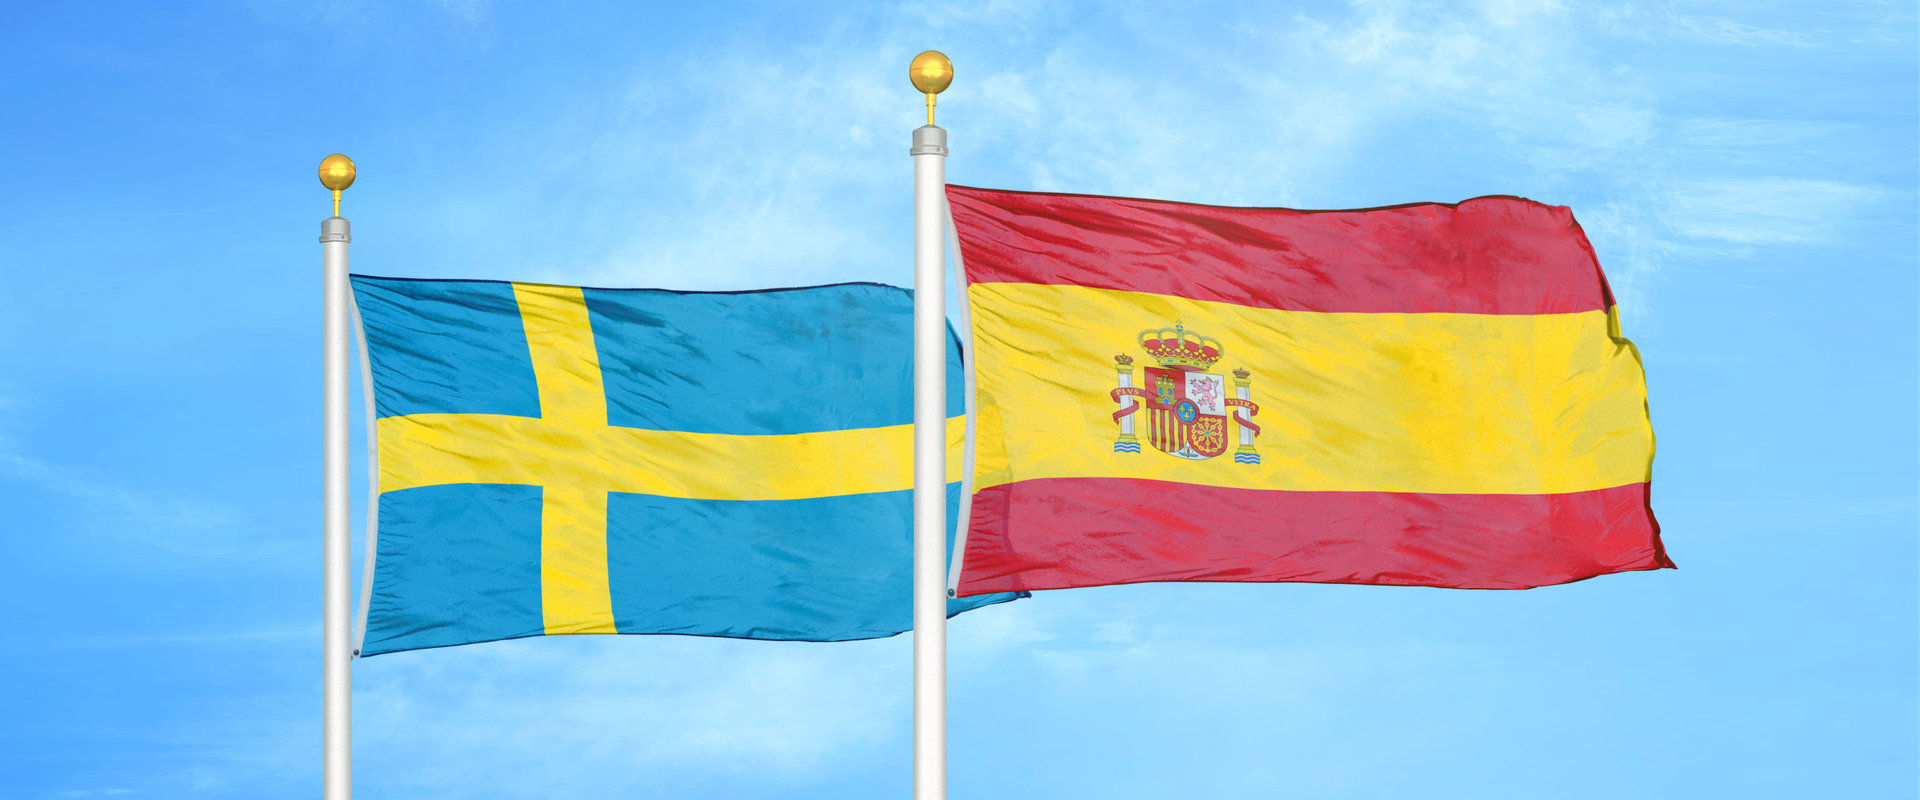 Skatteavtalet mellan Sverige och Spanien